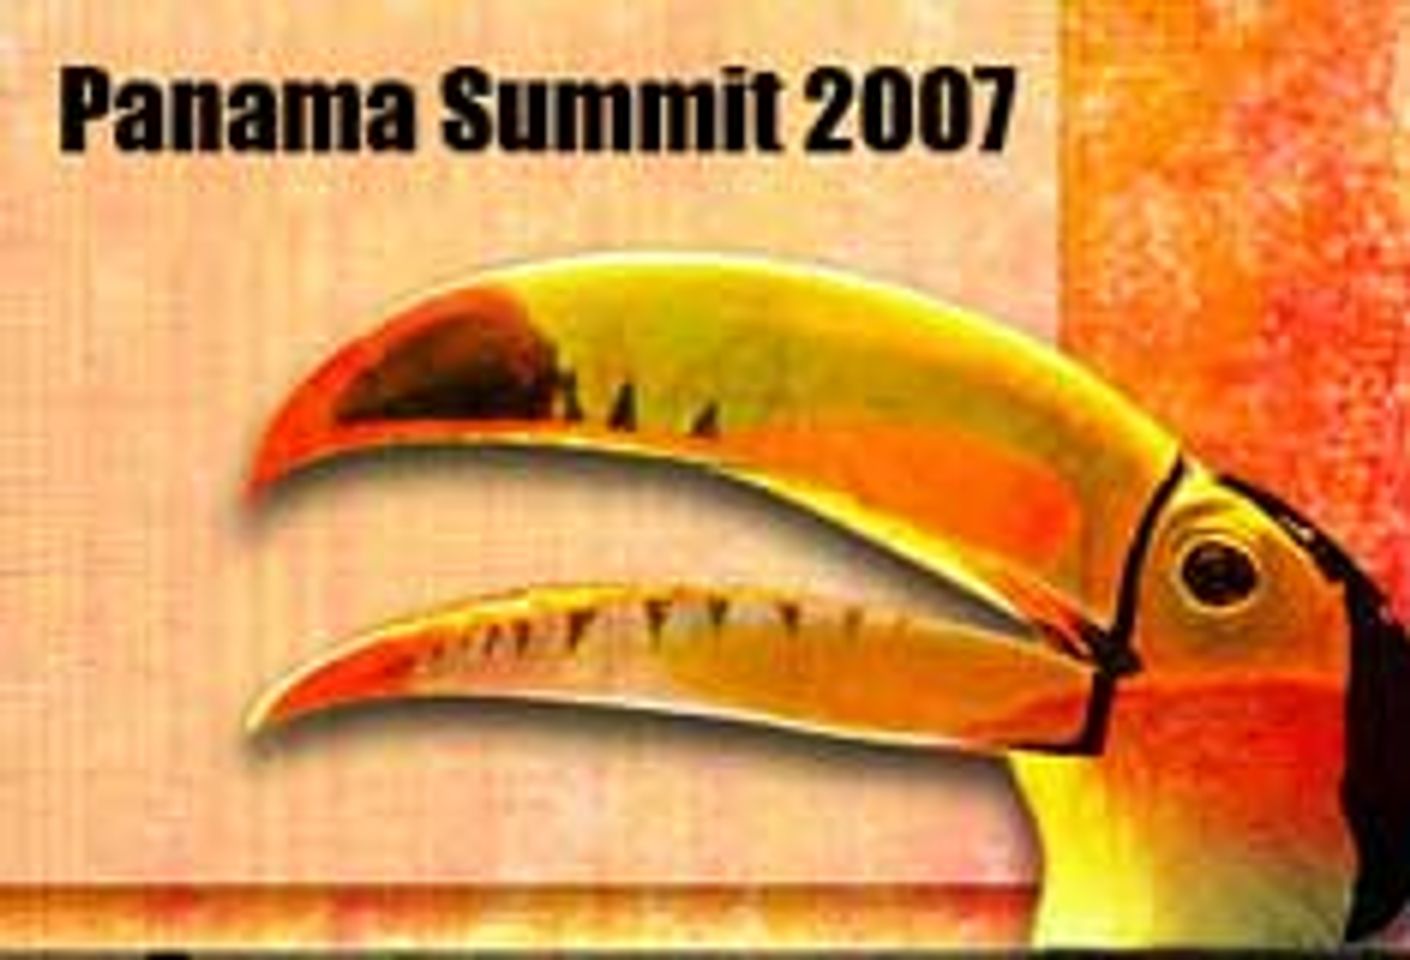 Panama Summit a Networking Success